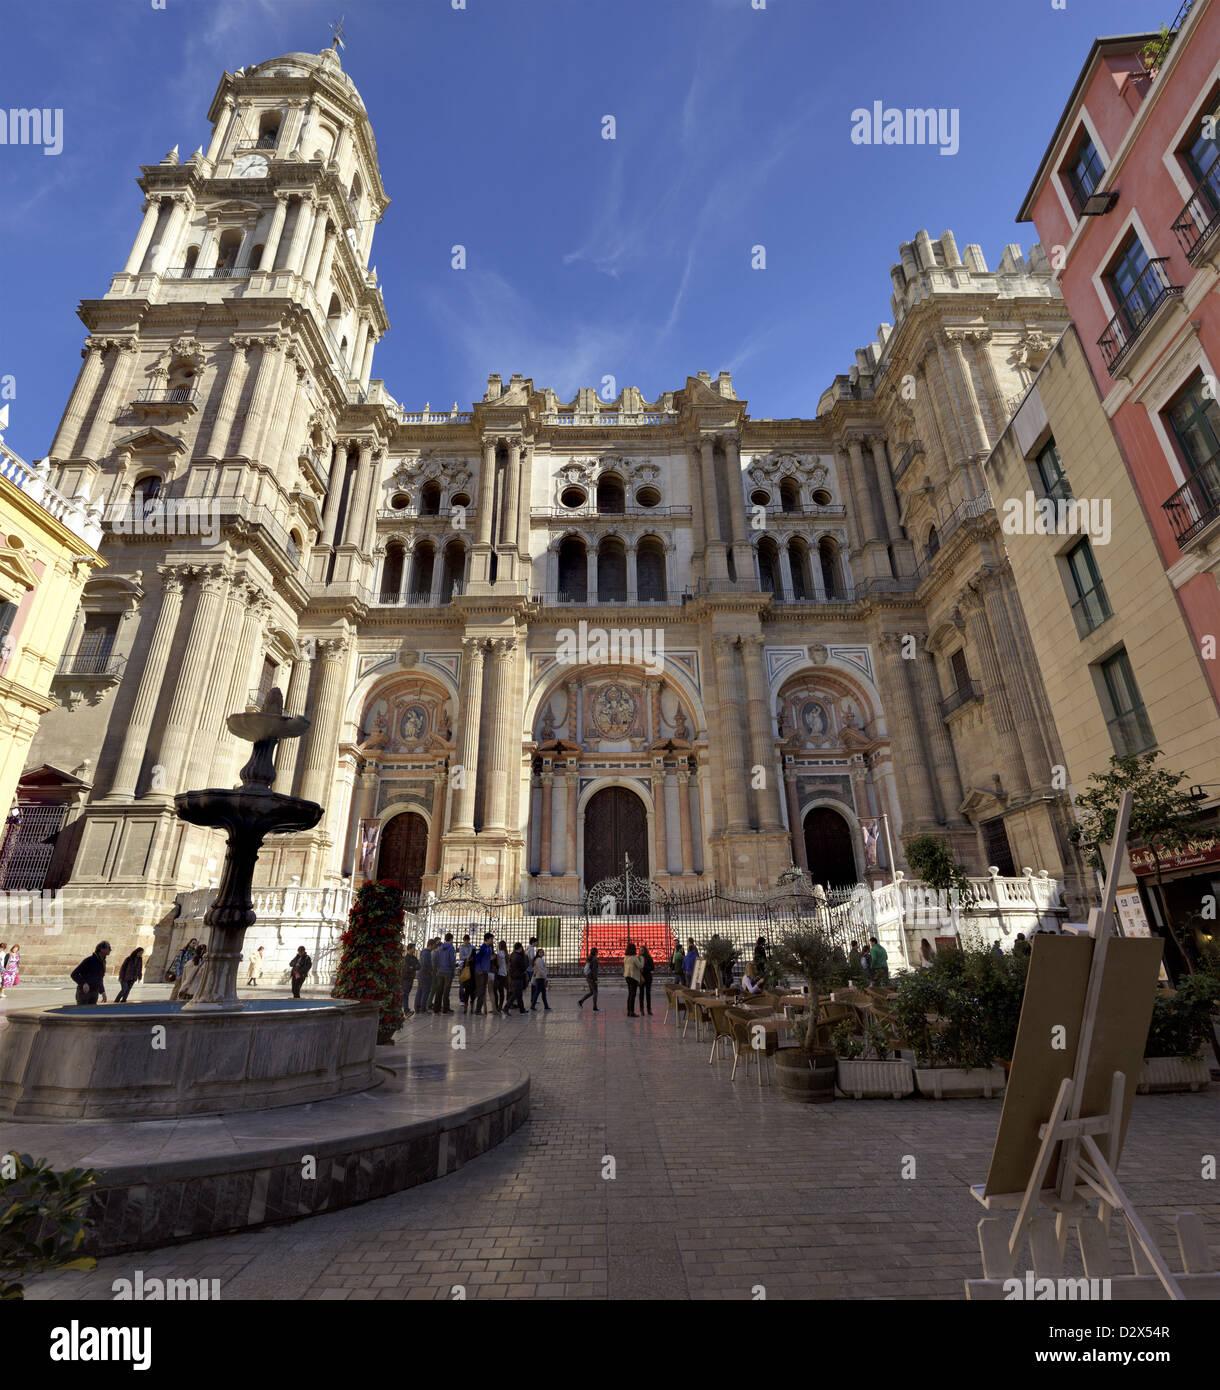 Cattedrale di Malaga Santa Iglesia Catedral Basilica de la Encarnacion Malaga Spagna. Un immagine sei cucita immagine. Foto Stock